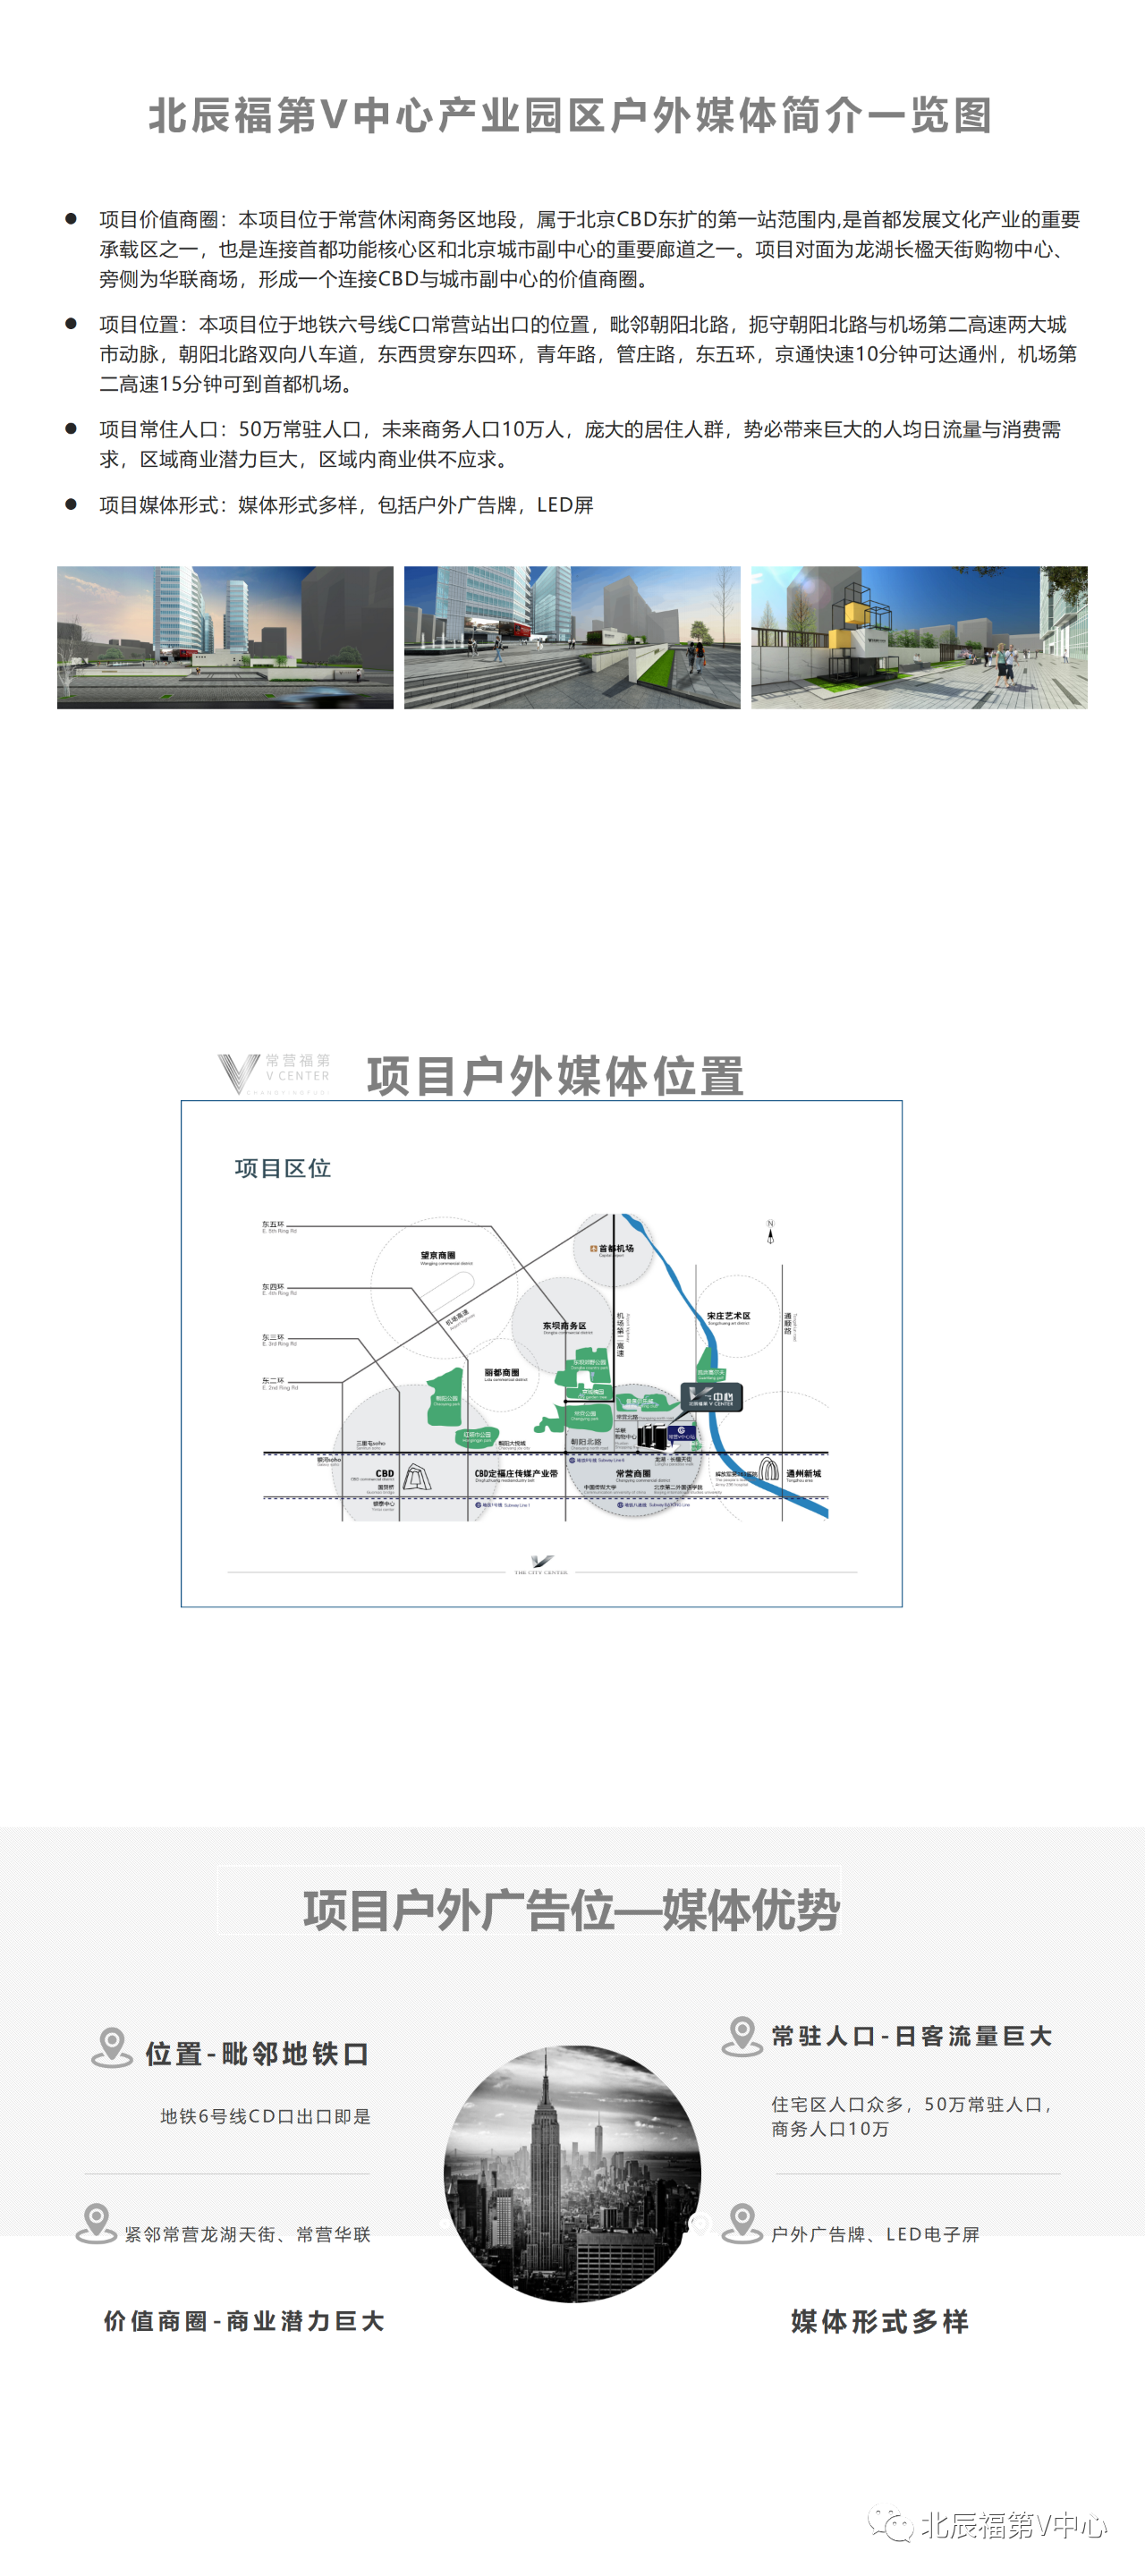 本项目位于常营休闲商务区地段，属于北京CBD东扩第一站范围内，是首都发展文化产业的重要承载区之一，也是连接首都功能核心区和北京城市副中心的重要廊道之一。项目对面为龙湖长楹天街购物中心，旁侧为华联商场，形成一个连接CBD与城市副中心的价值商圈。项目媒体形式：媒体形式多样，包括户外广告牌、LED屏，具有独特的户外媒体优势